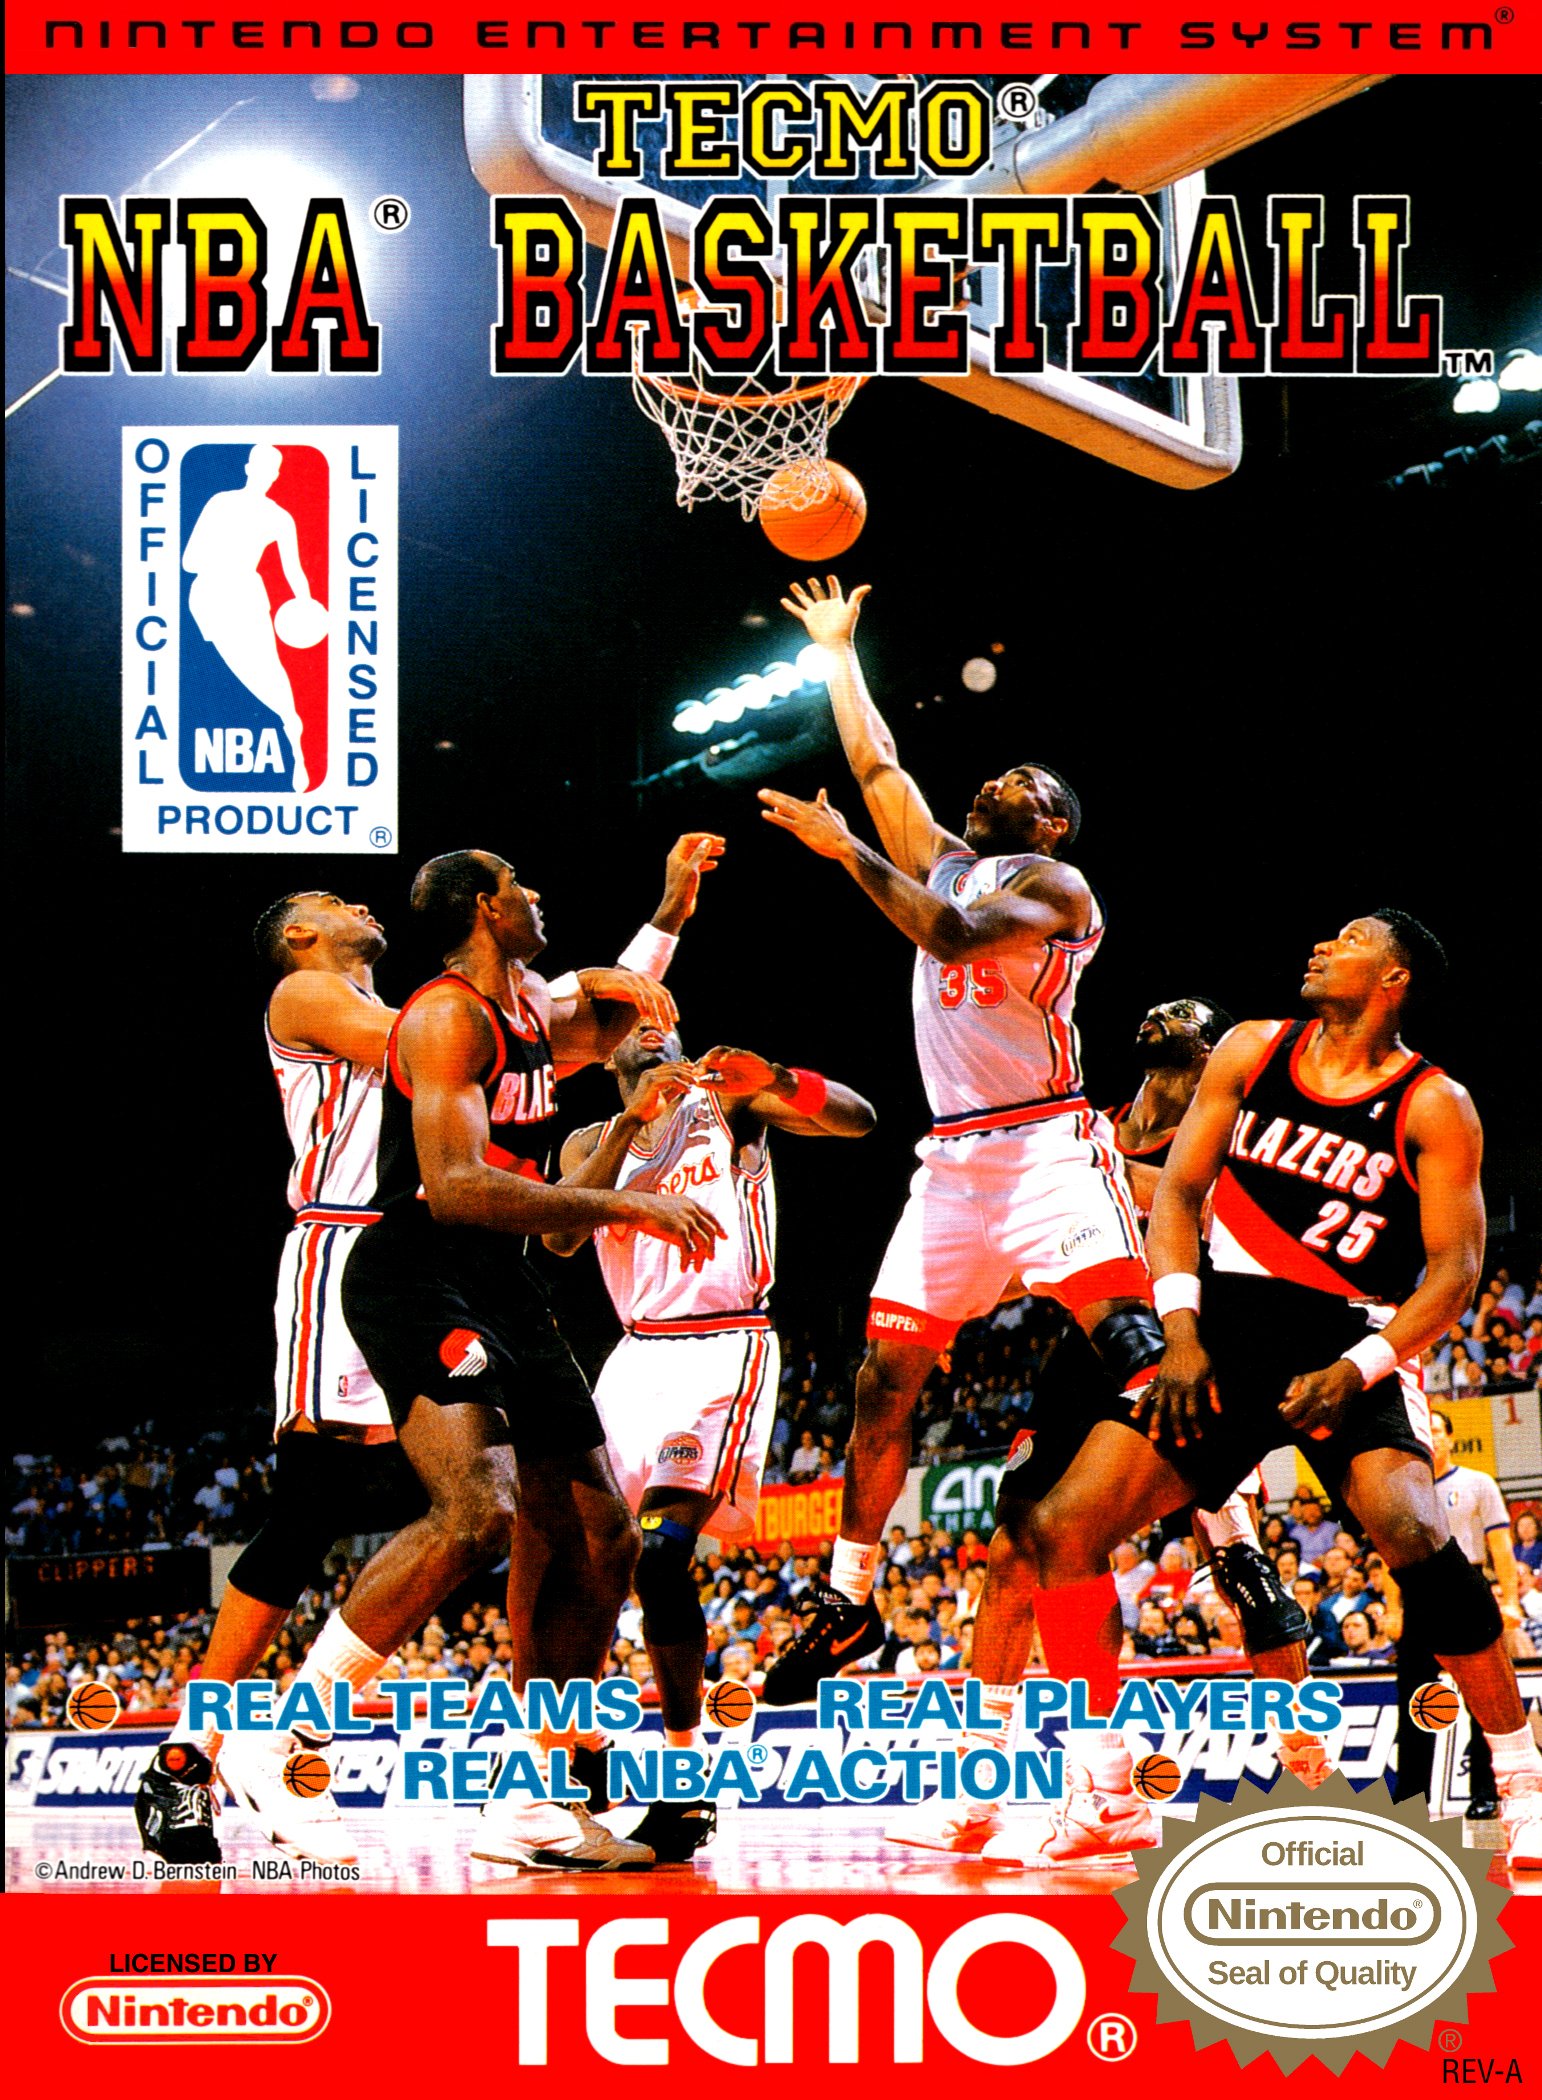 Image of Tecmo NBA Basketball